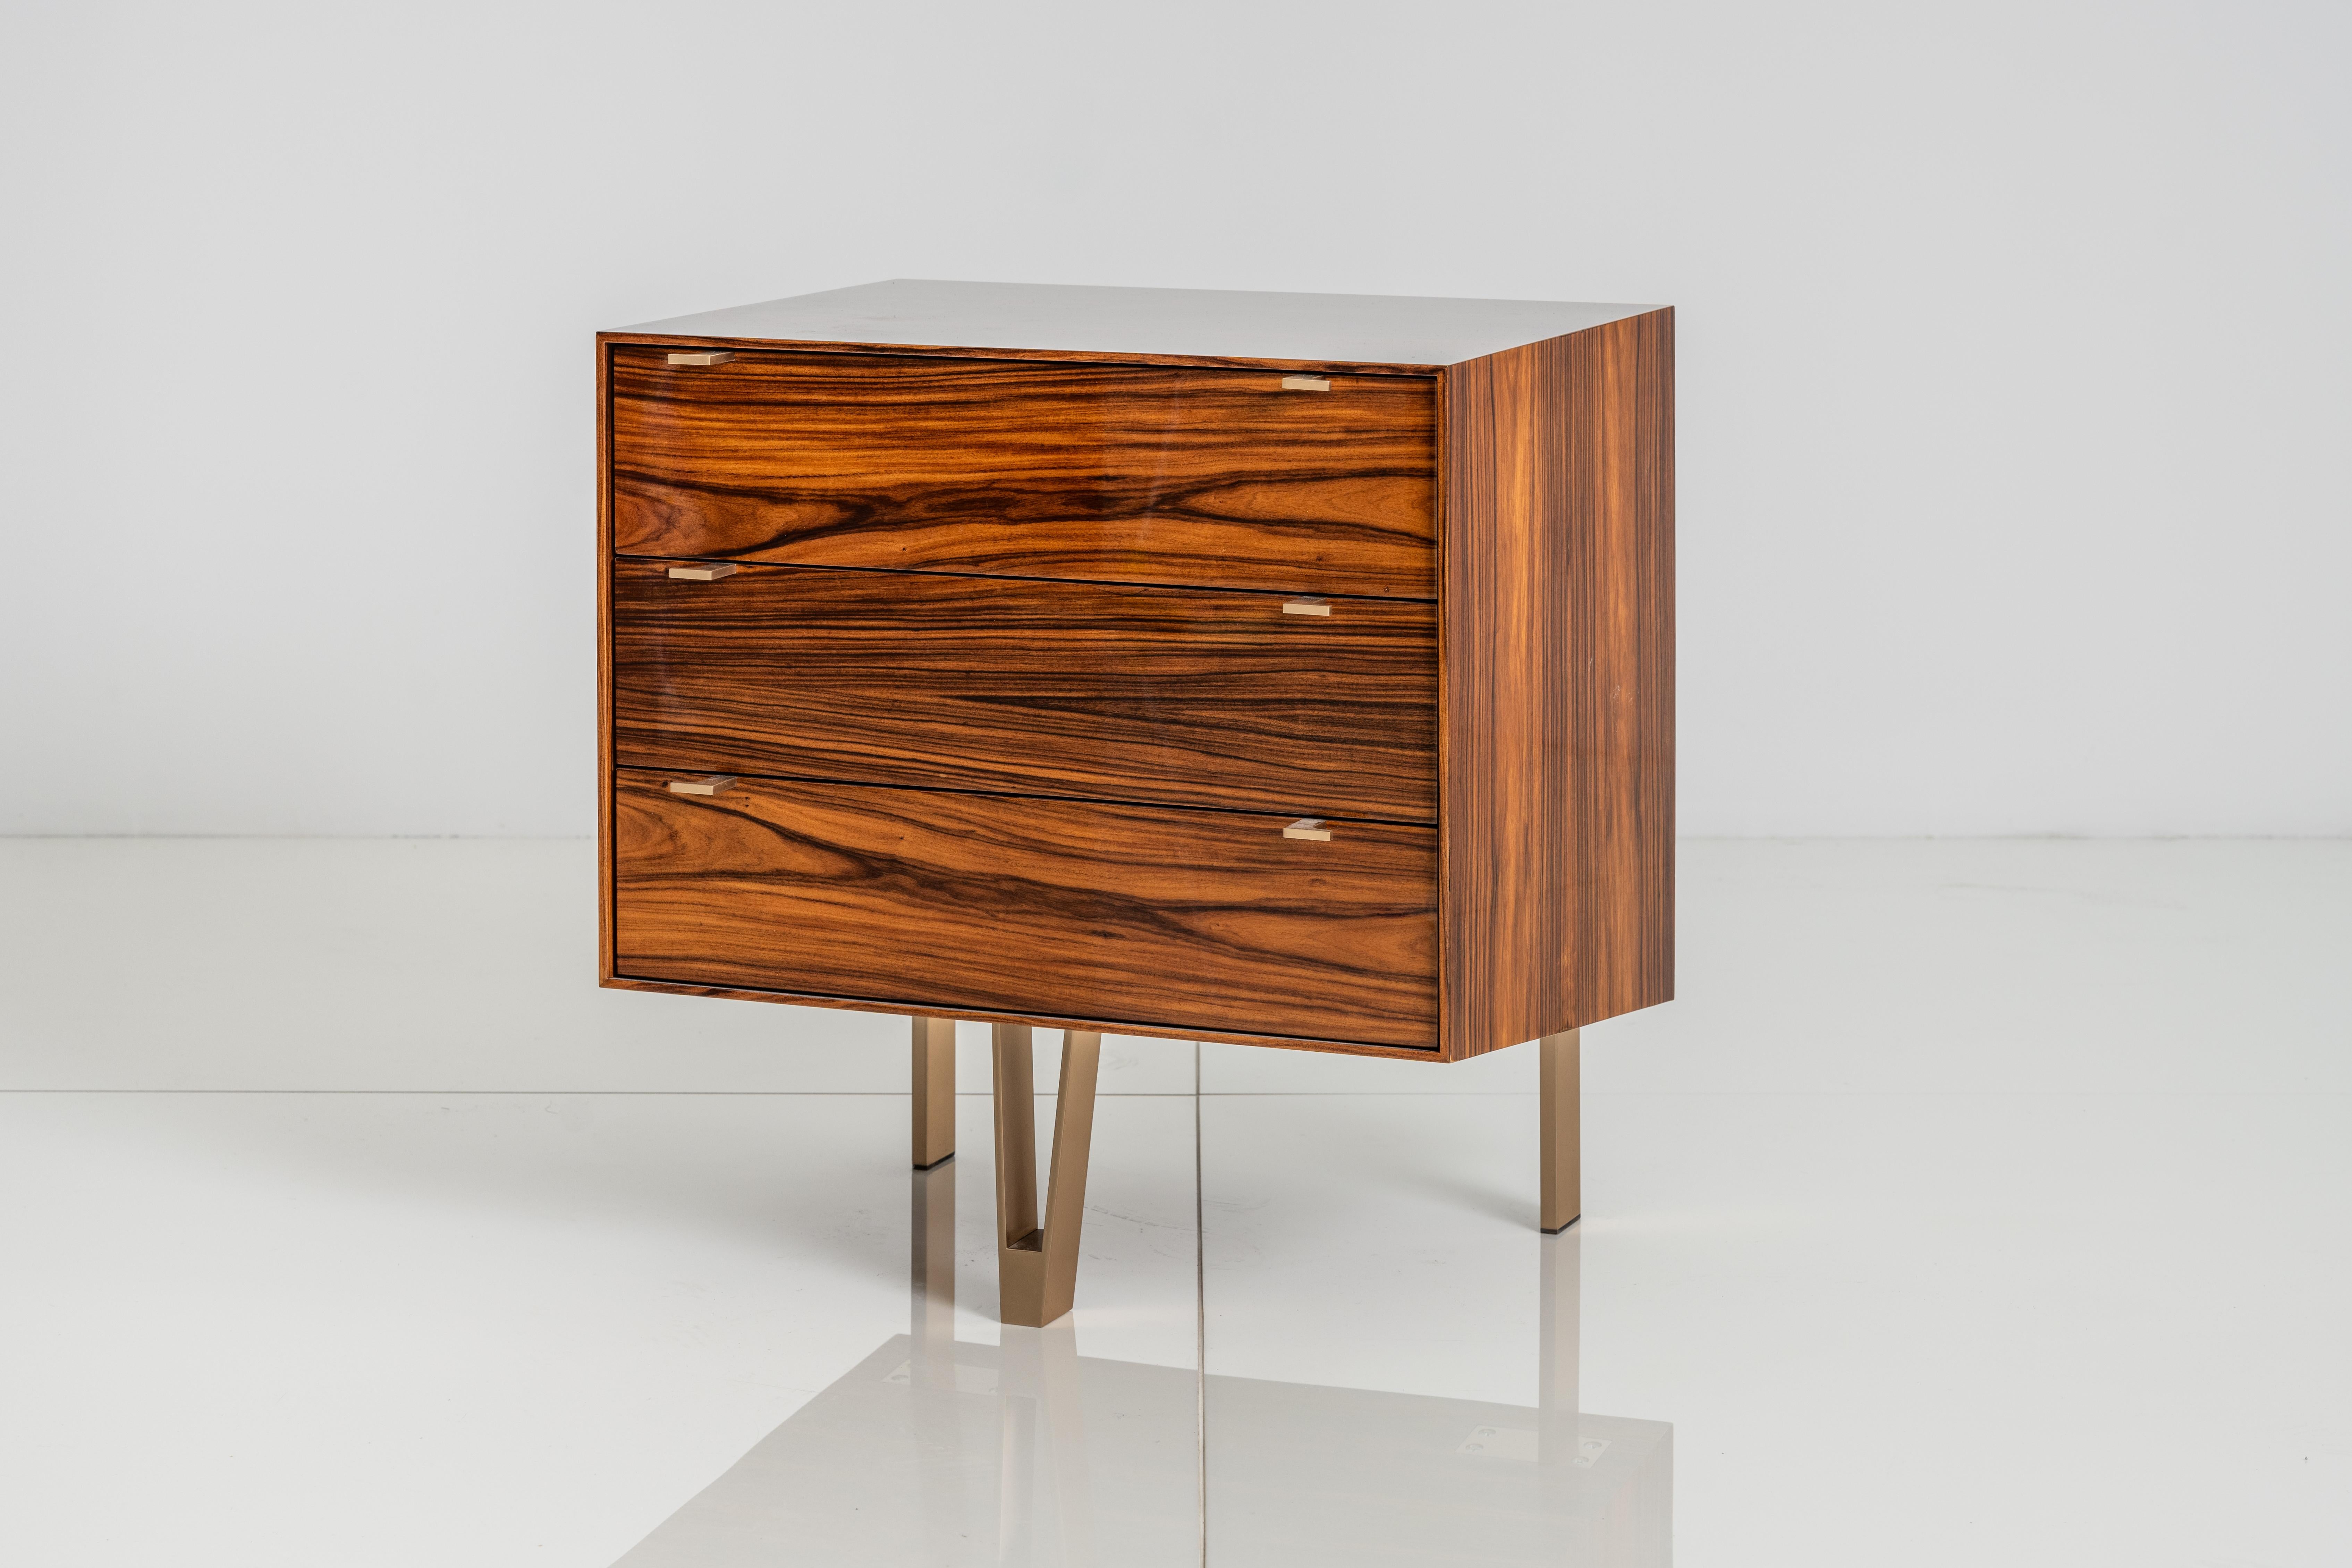 Der Saxton End Cabinet zeichnet sich durch einen glänzenden Holzrahmen und einen gekanteten Korpus aus, der ihm eine optische Leichtigkeit verleiht. Wie alle KGBL-Stücke ist auch dieser Artikel von allen Seiten bearbeitet. 

Es handelt sich um ein